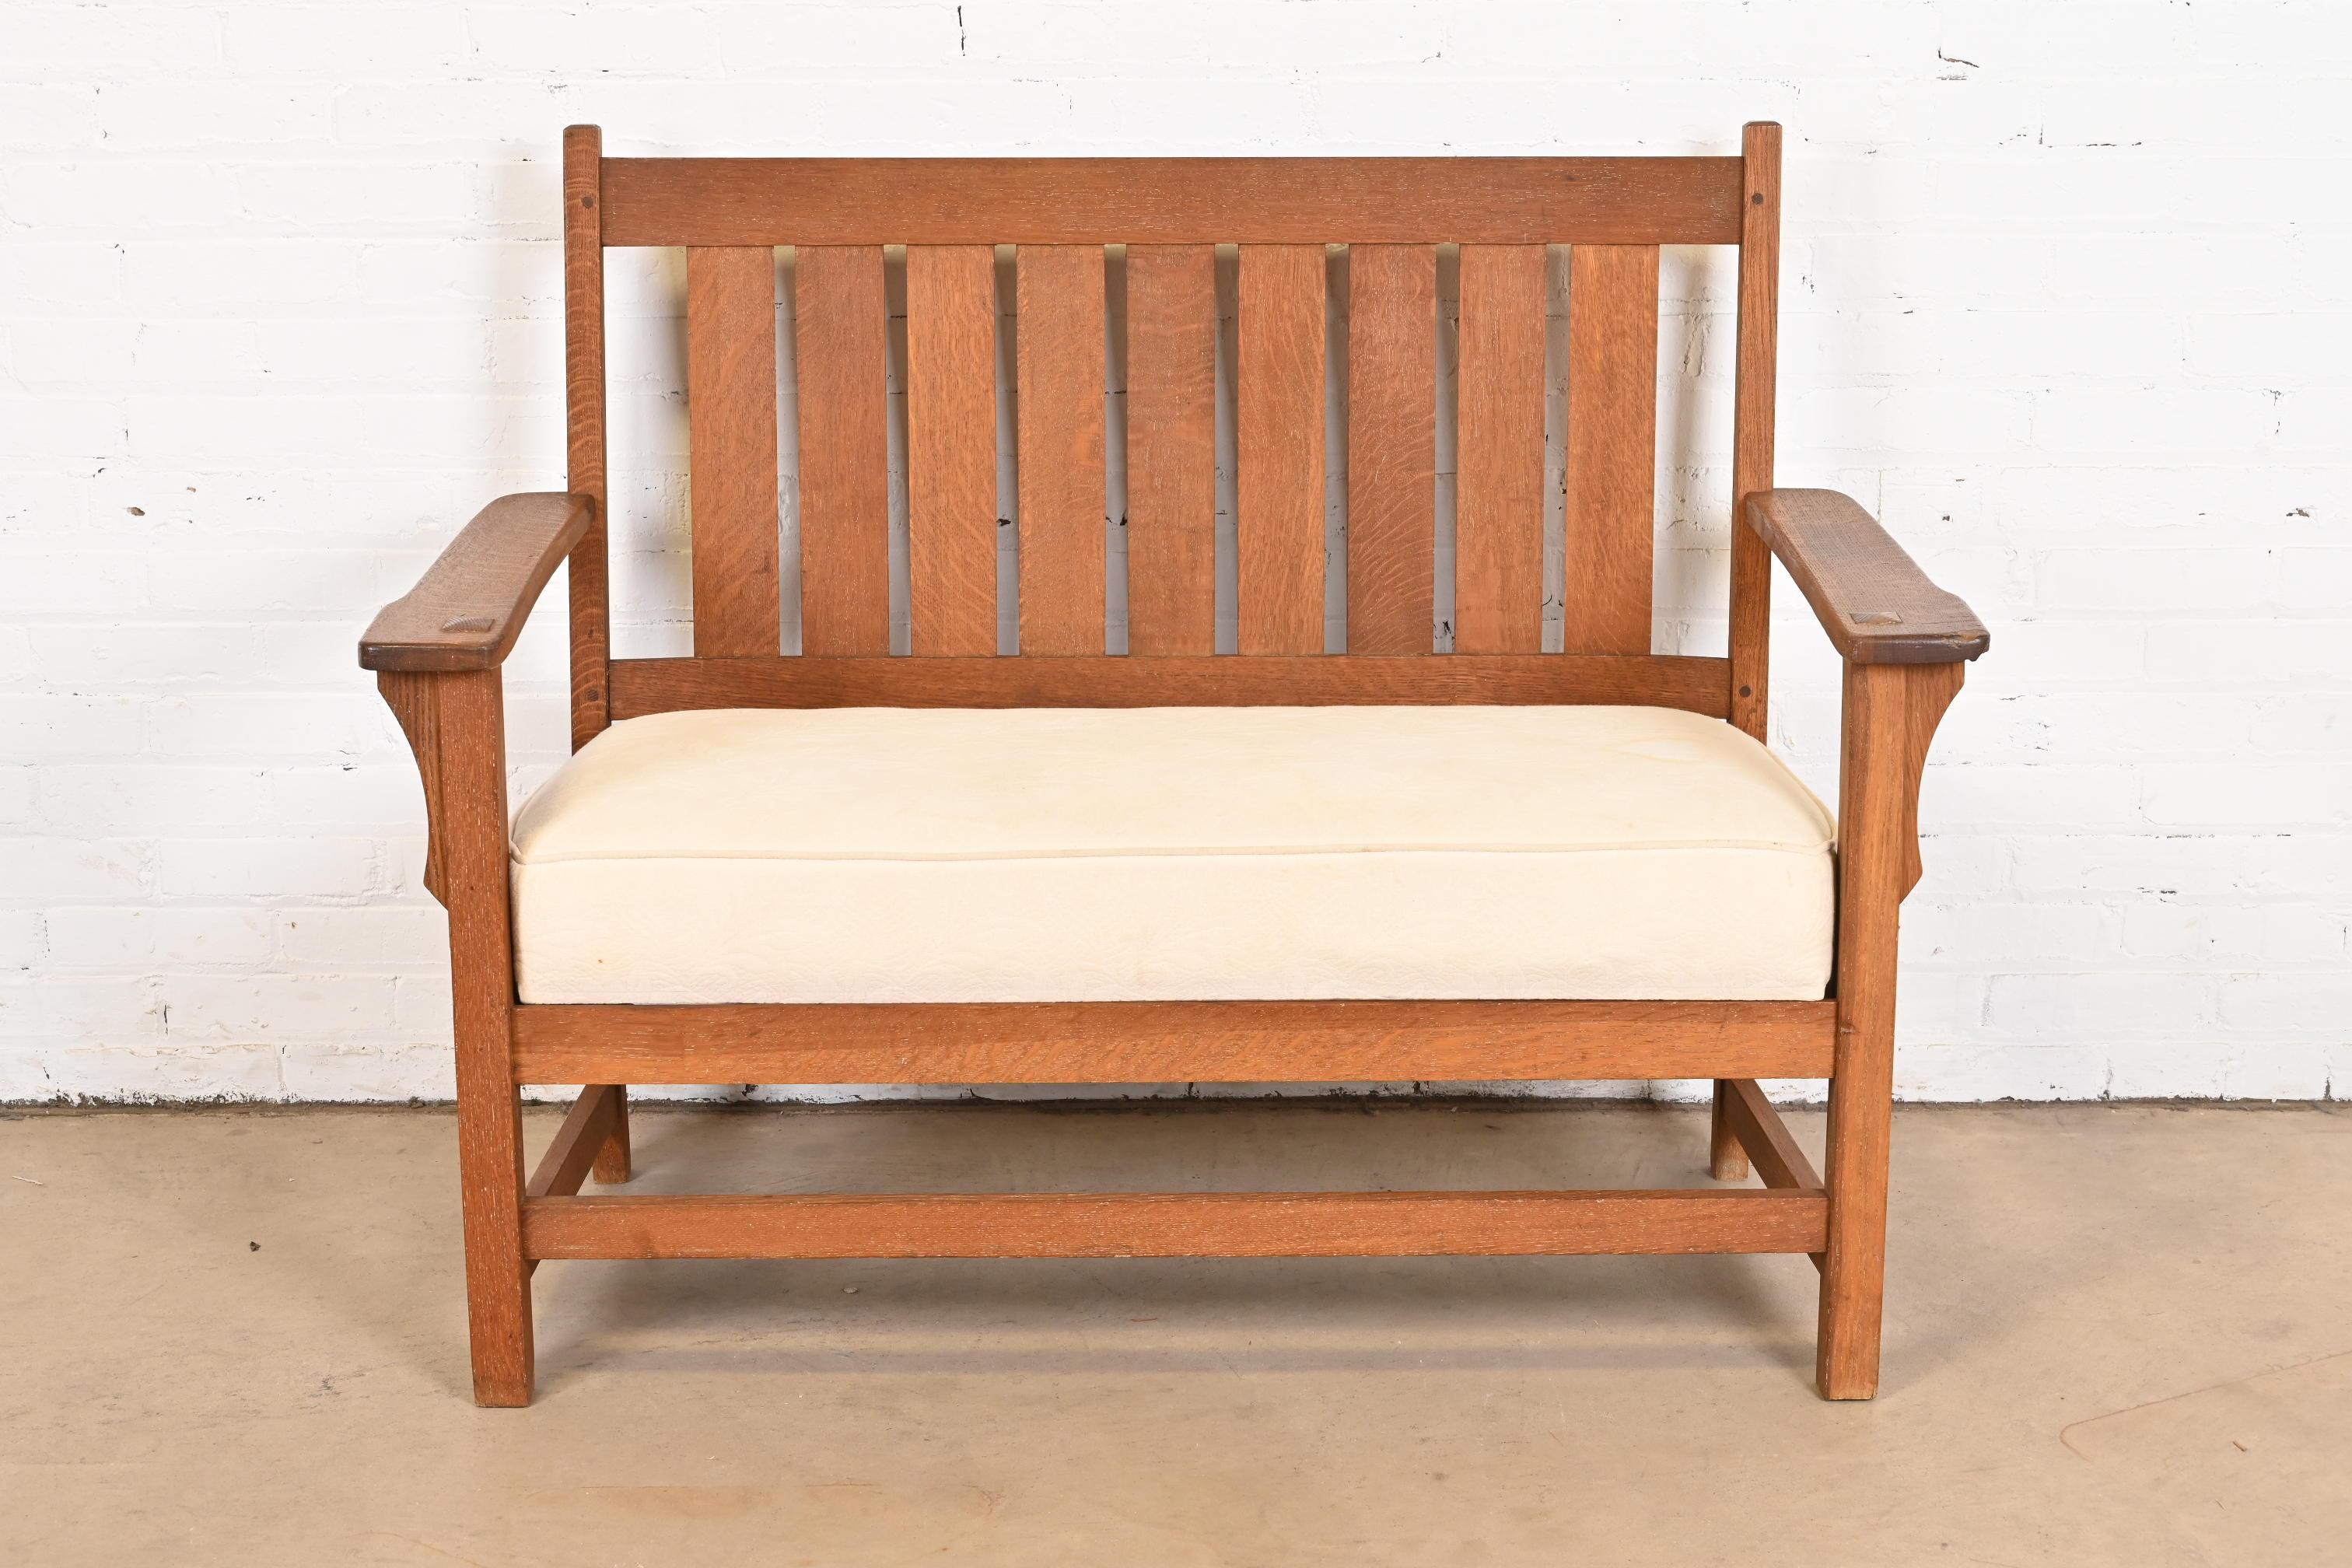 Ein schöner Liegesitz, ein Sofa oder eine Bank im Missions- oder Arts & Crafts-Stil

Nach dem Vorbild von Gustav Stickley

USA, ca. 1900

Massive, quartiersgesägte Eiche, mit cremefarbenem, gepolstertem Sitzkissen.

Maße: 48,25 